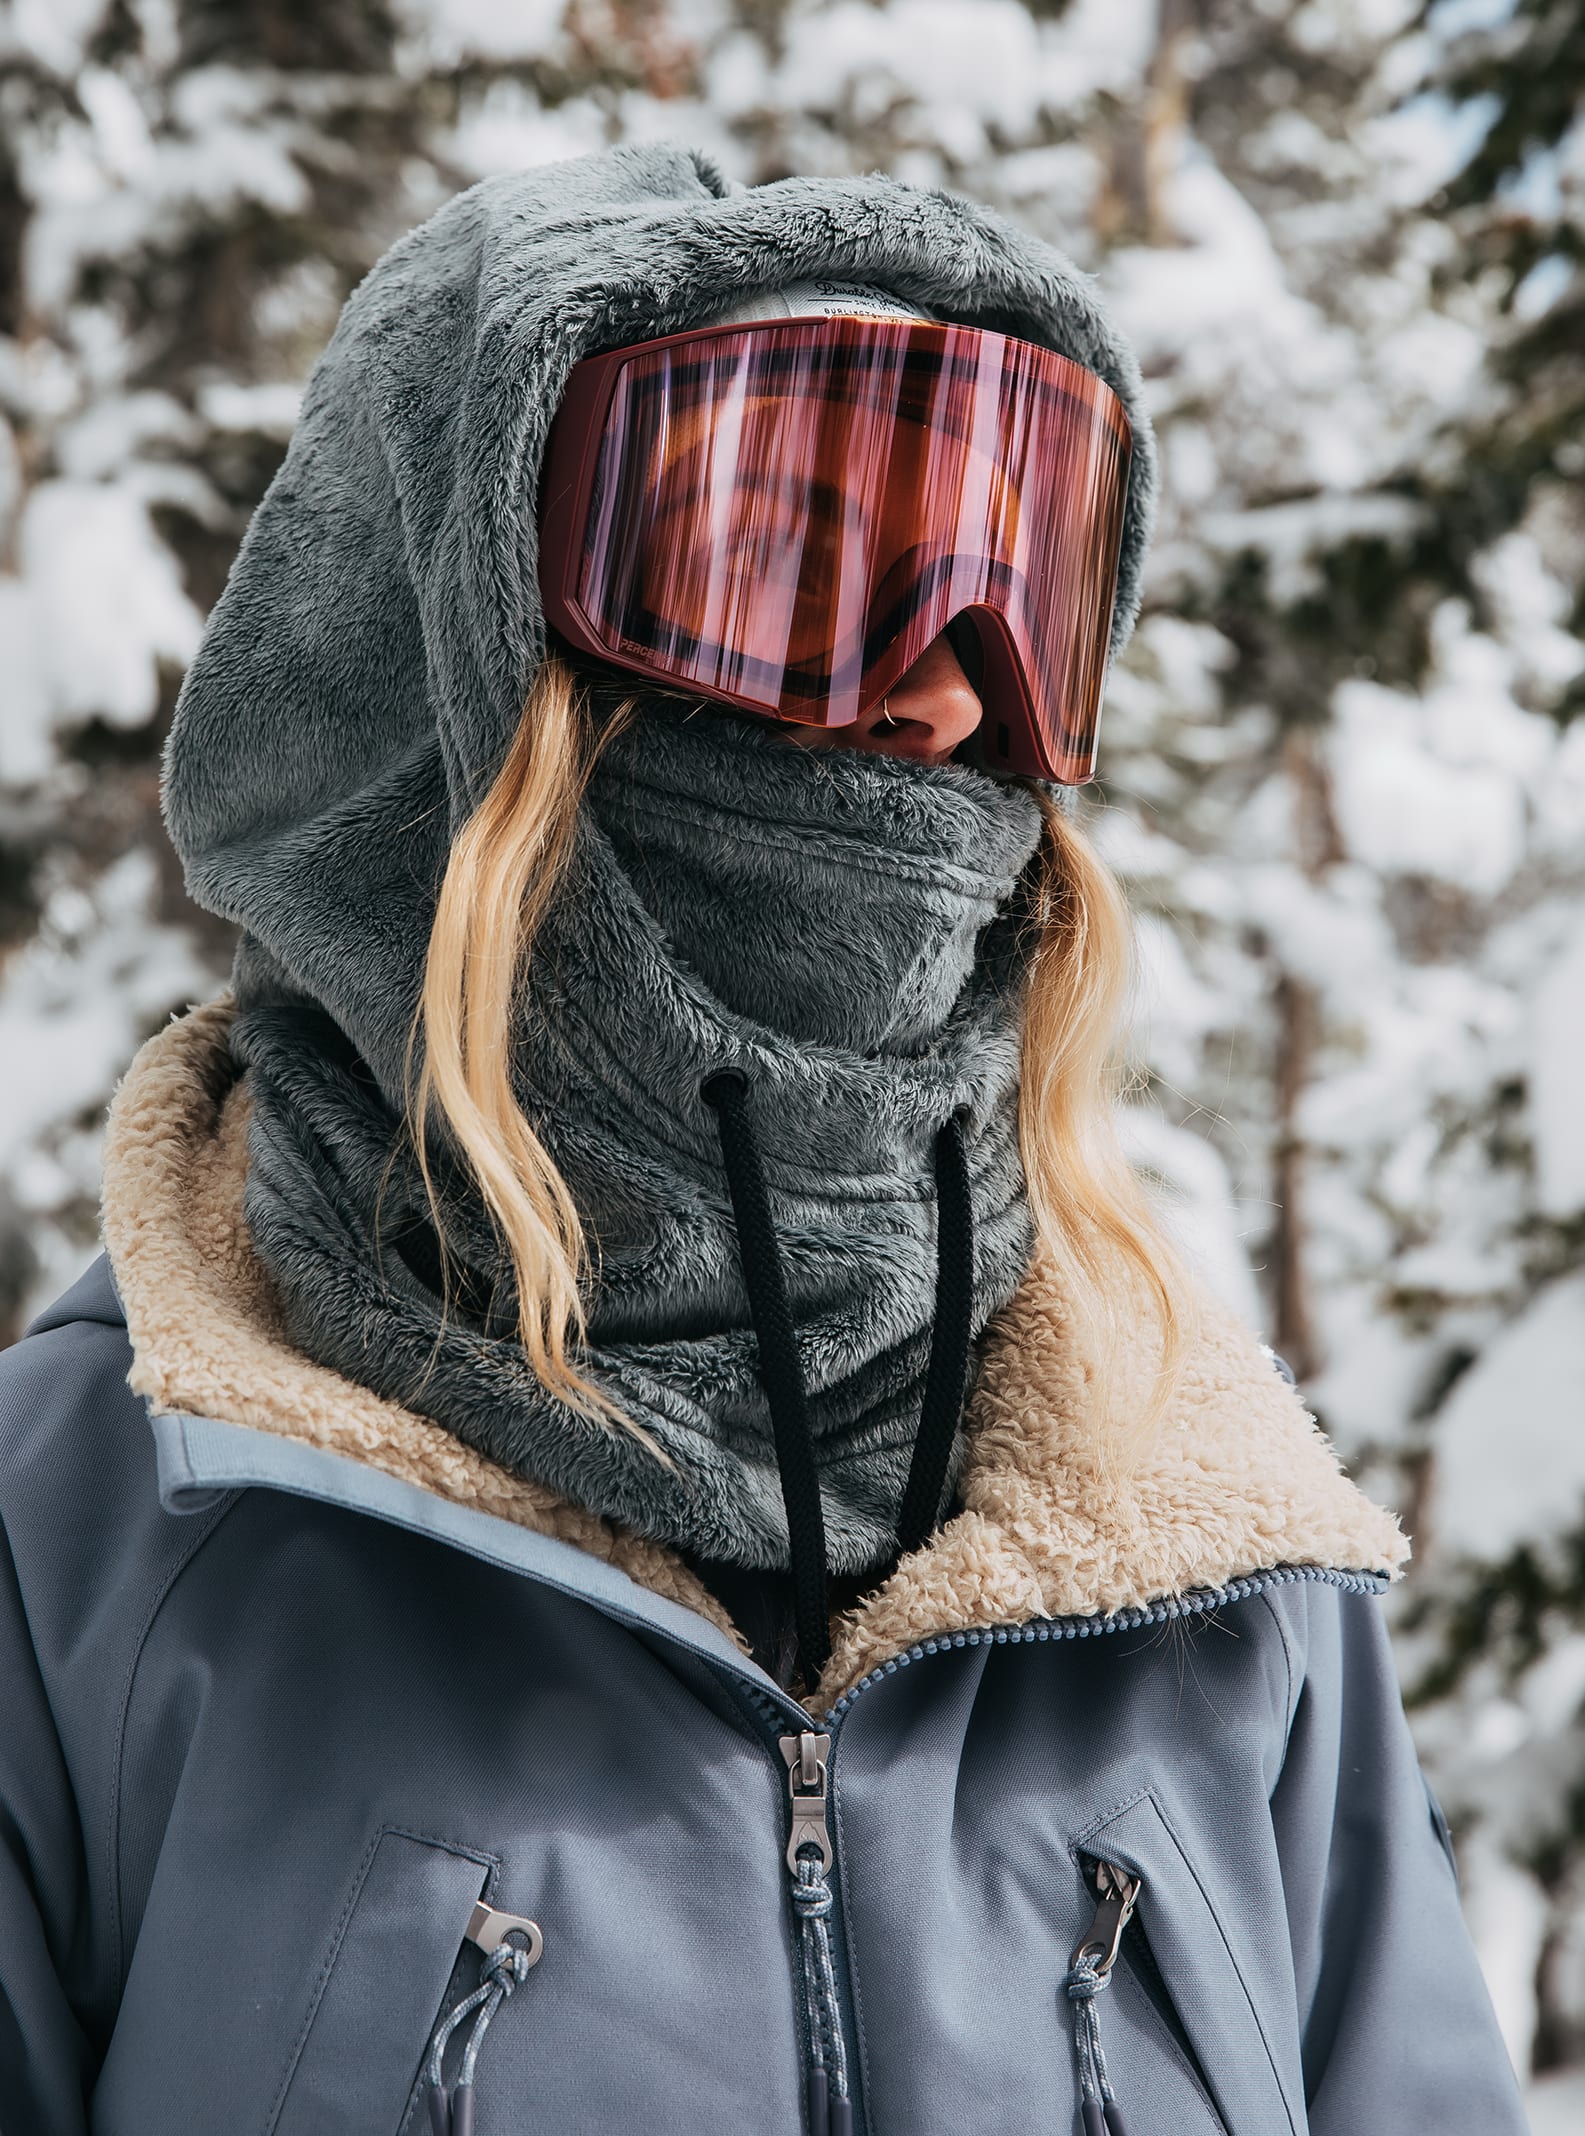 Winter Neck Warmer Gaiter Ski Mask for Men & Women 